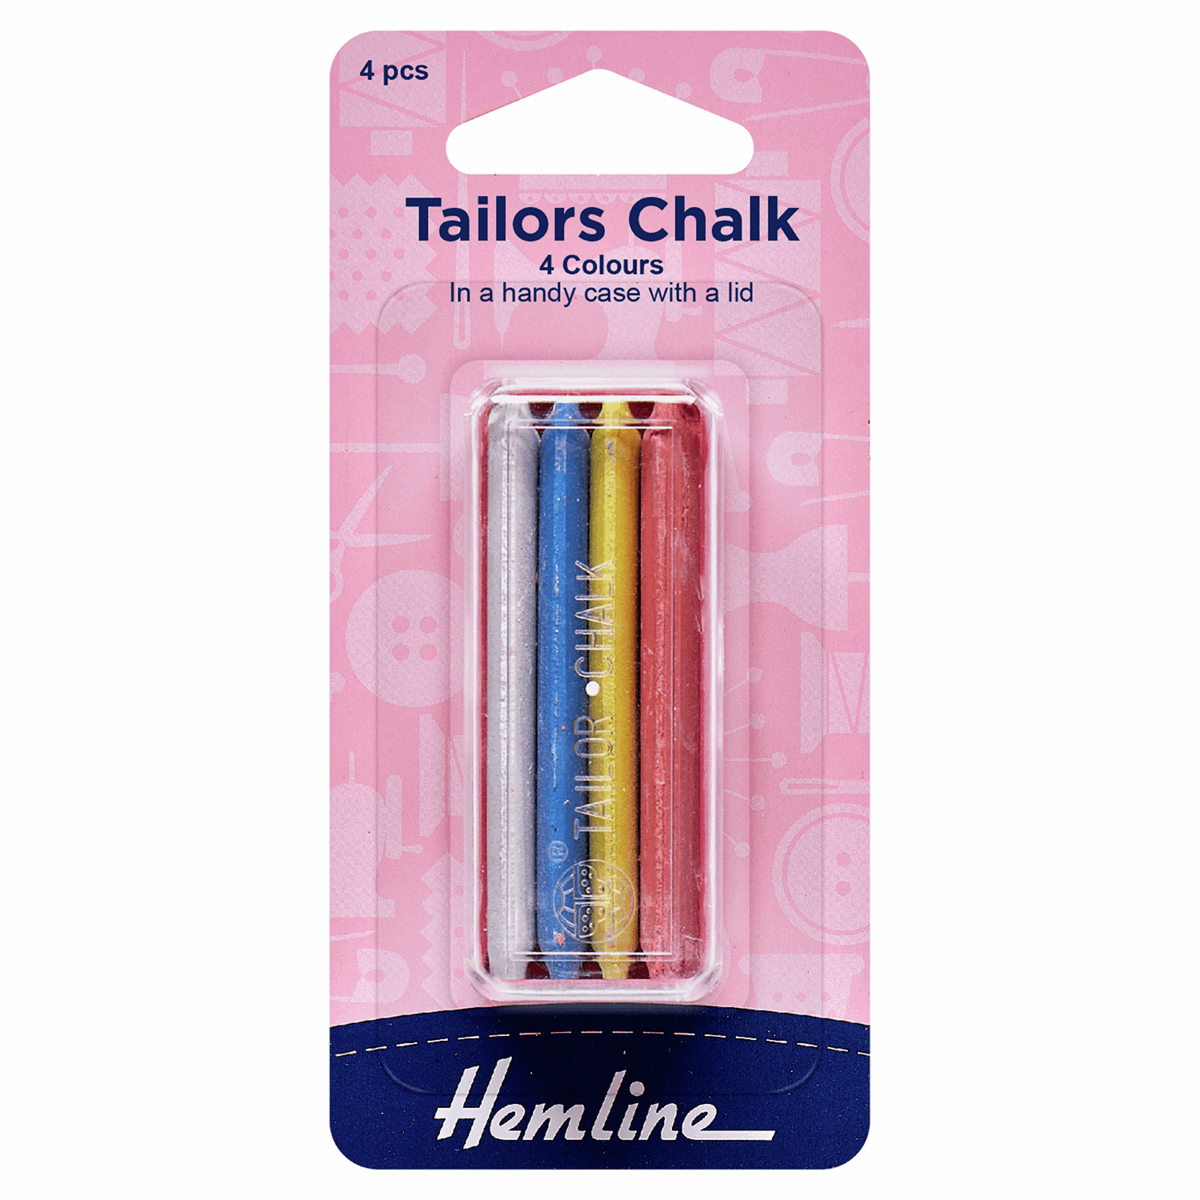 Hemline: Tailors Chalk: Pack of 4 Colours